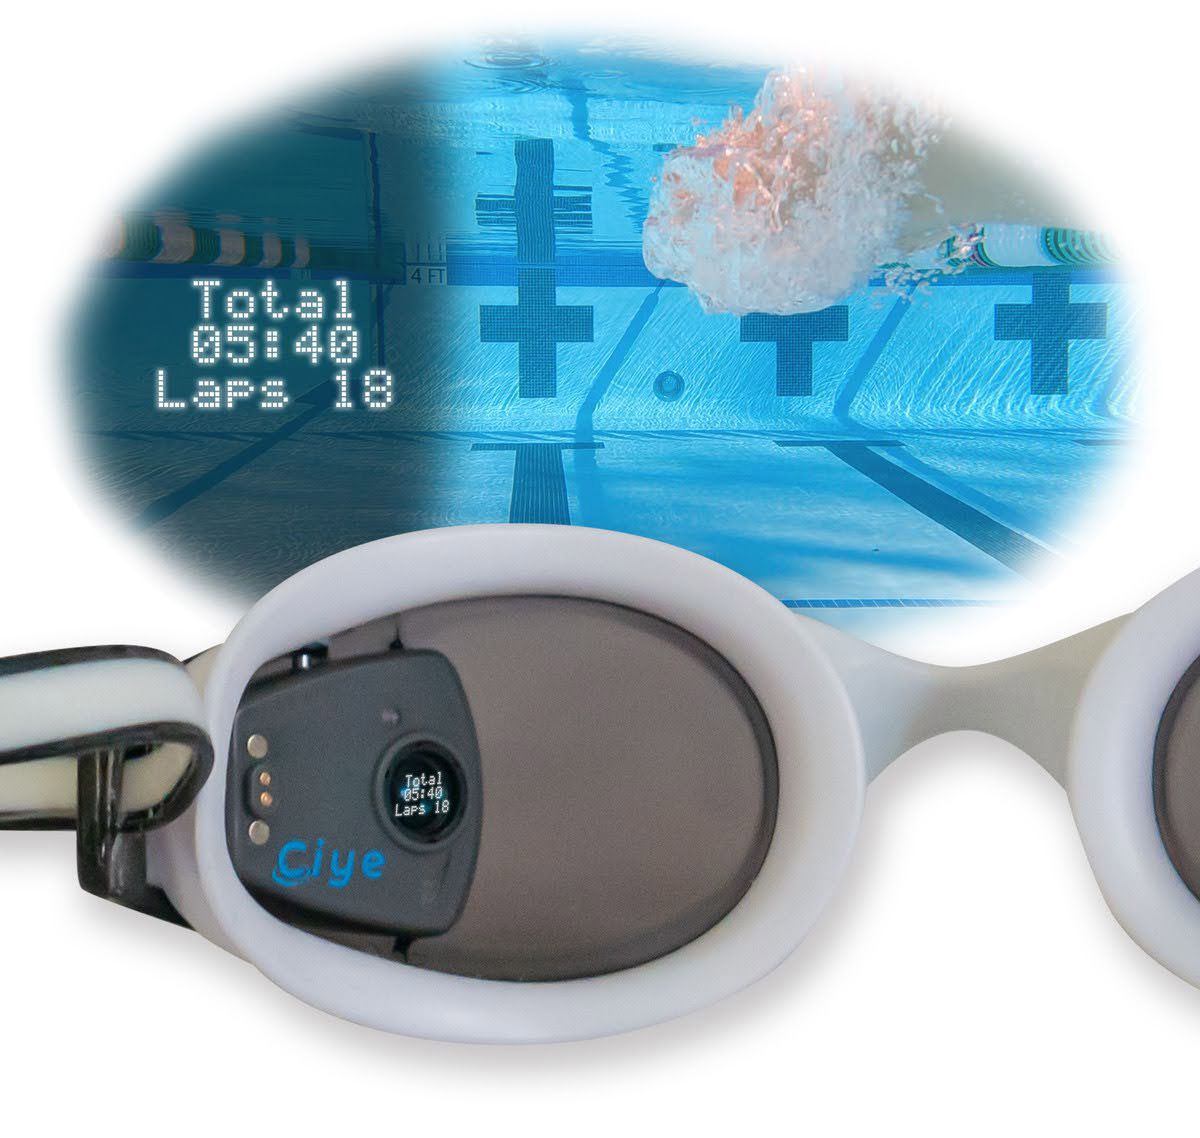 智能护目镜的左镜头特写，显示小Ciye模块。一个覆盖层显示了游泳者戴着护目镜时看到的东西，泳圈显示在游泳者的左侧视图中。